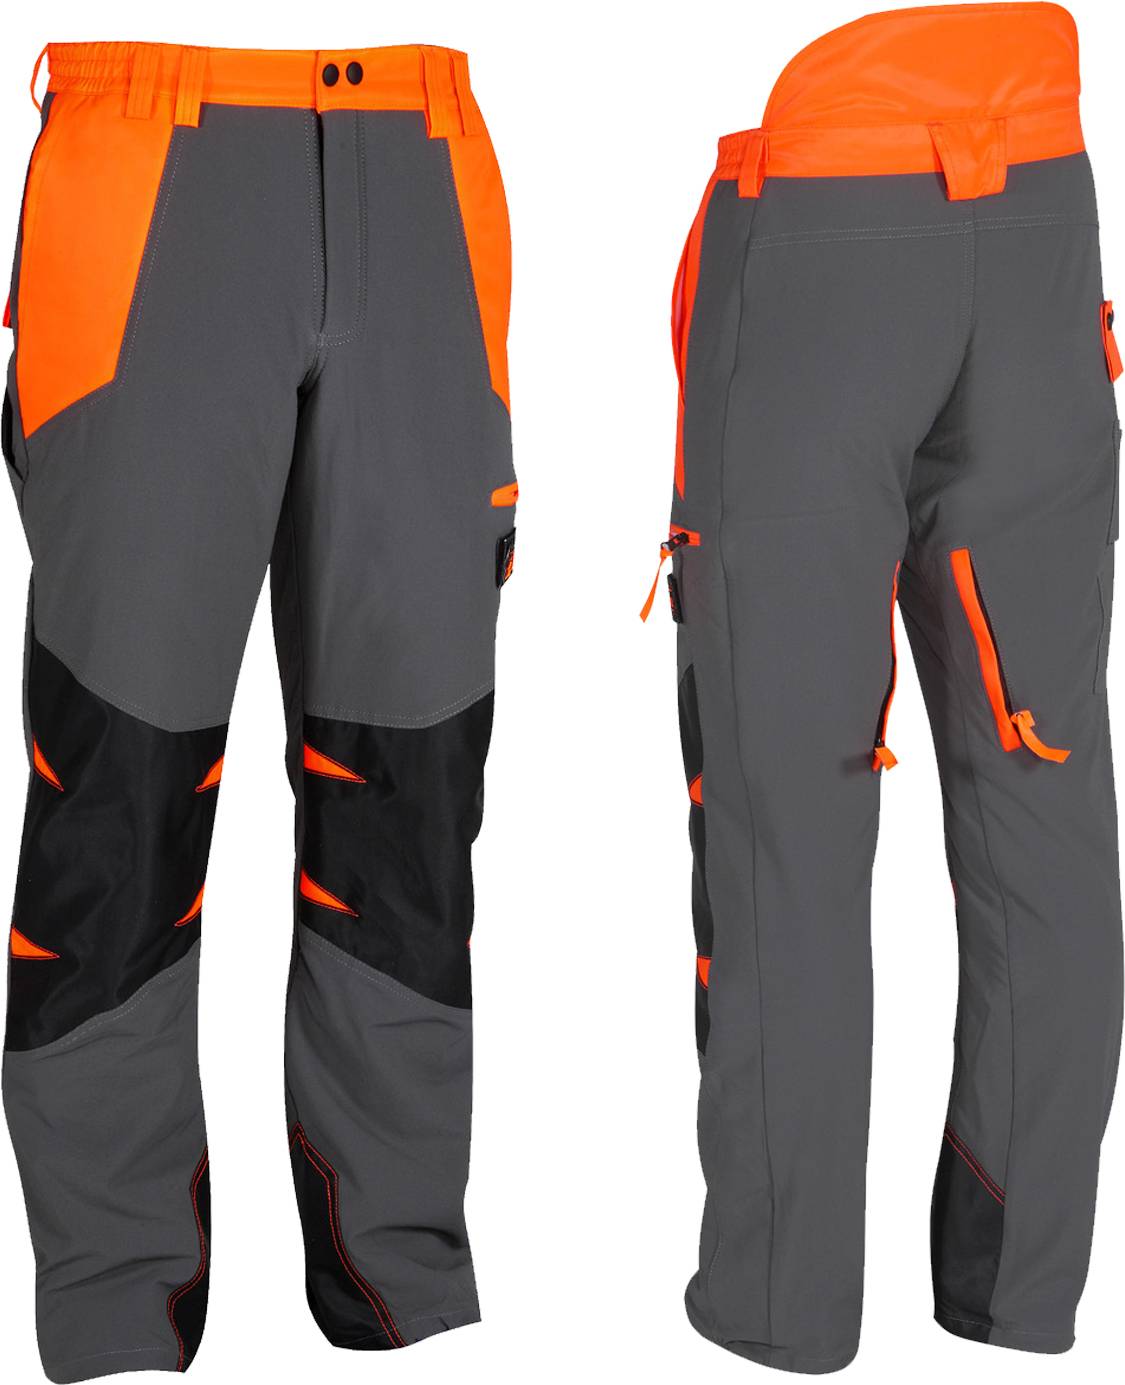 Pantalone antitaglio Air Light Efco – classe 3